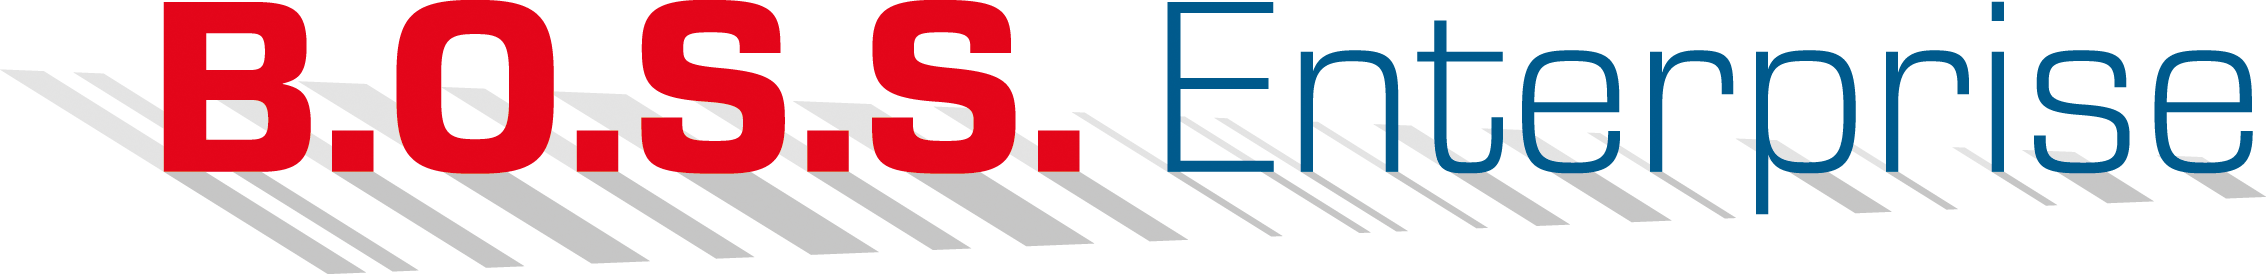 B.O.S.S. Enterprise logo